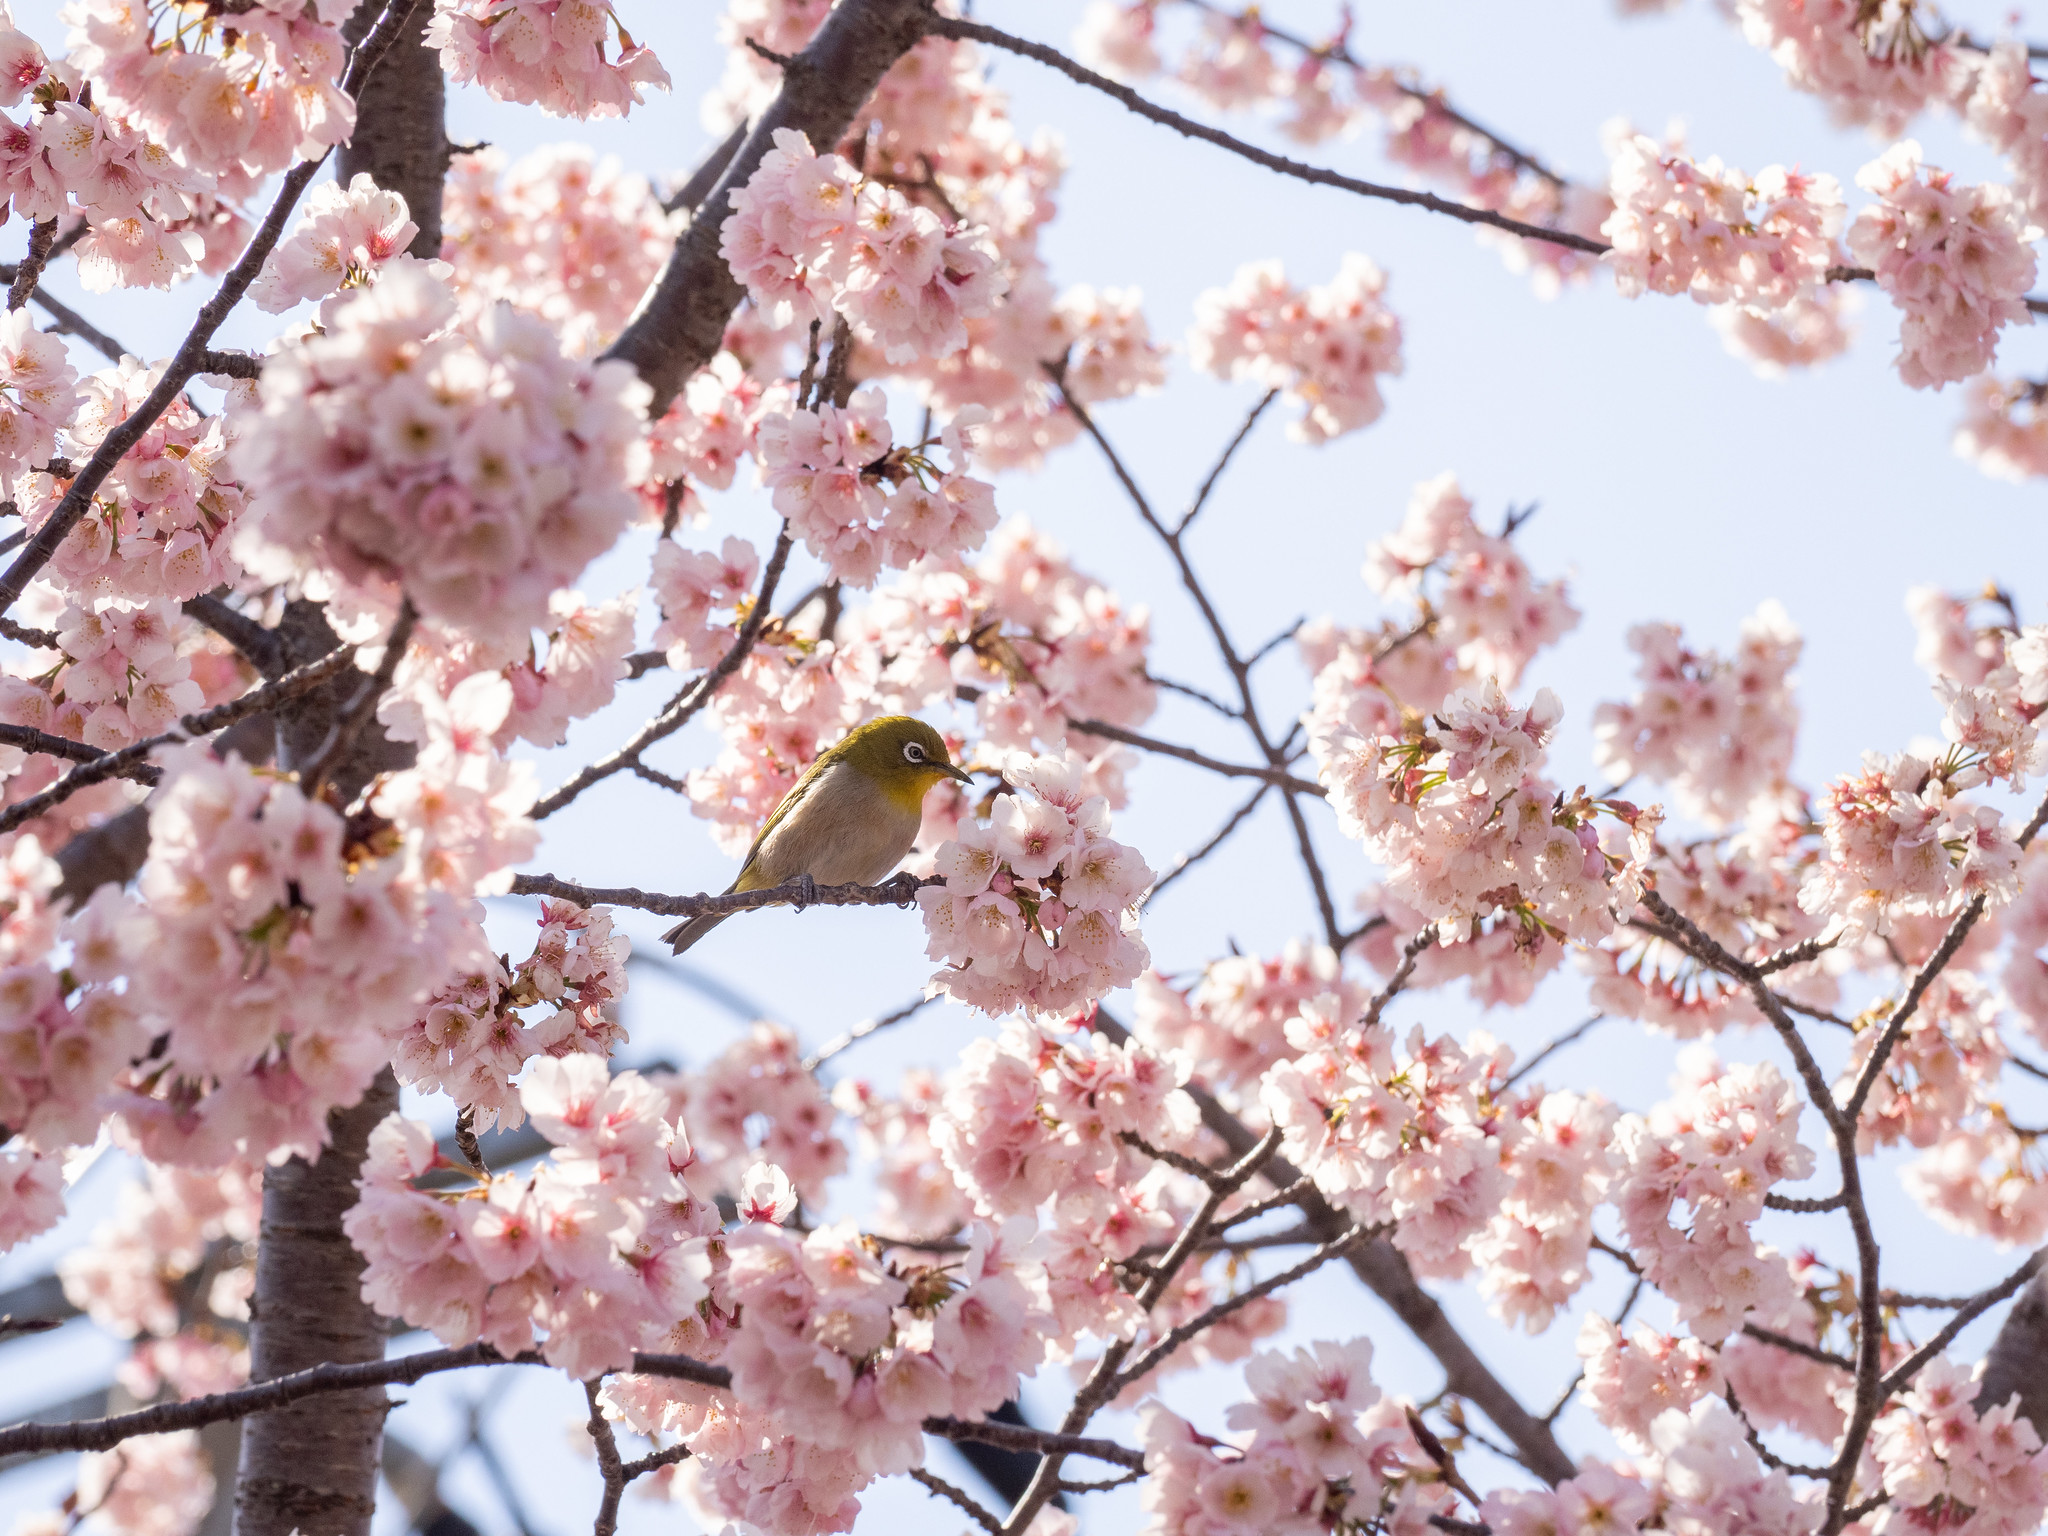 河津桜後ソメイヨシノ前の今が見頃の桜 埼玉県川口市の #安行桜 の名所 #密蔵院 などで花見しました